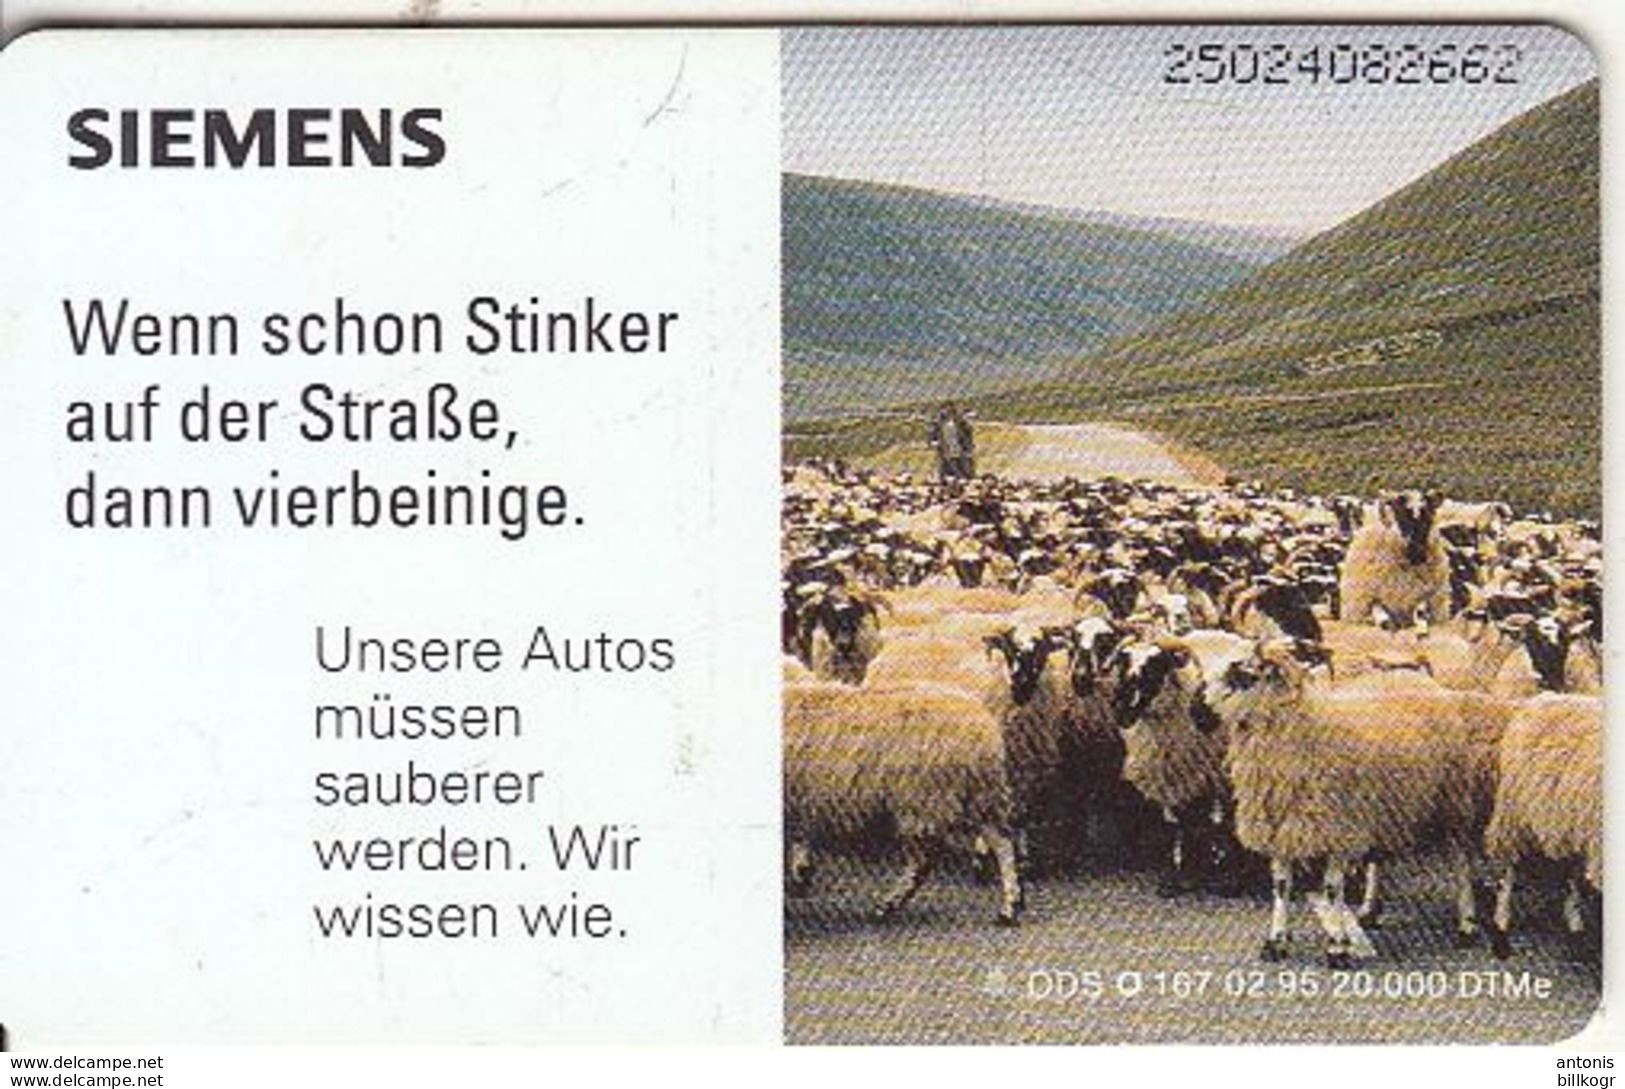 GERMANY - Sheeps, Siemens Umwelt 2(O 167), Tirage 20000, 02/95, Mint - O-Series: Kundenserie Vom Sammlerservice Ausgeschlossen